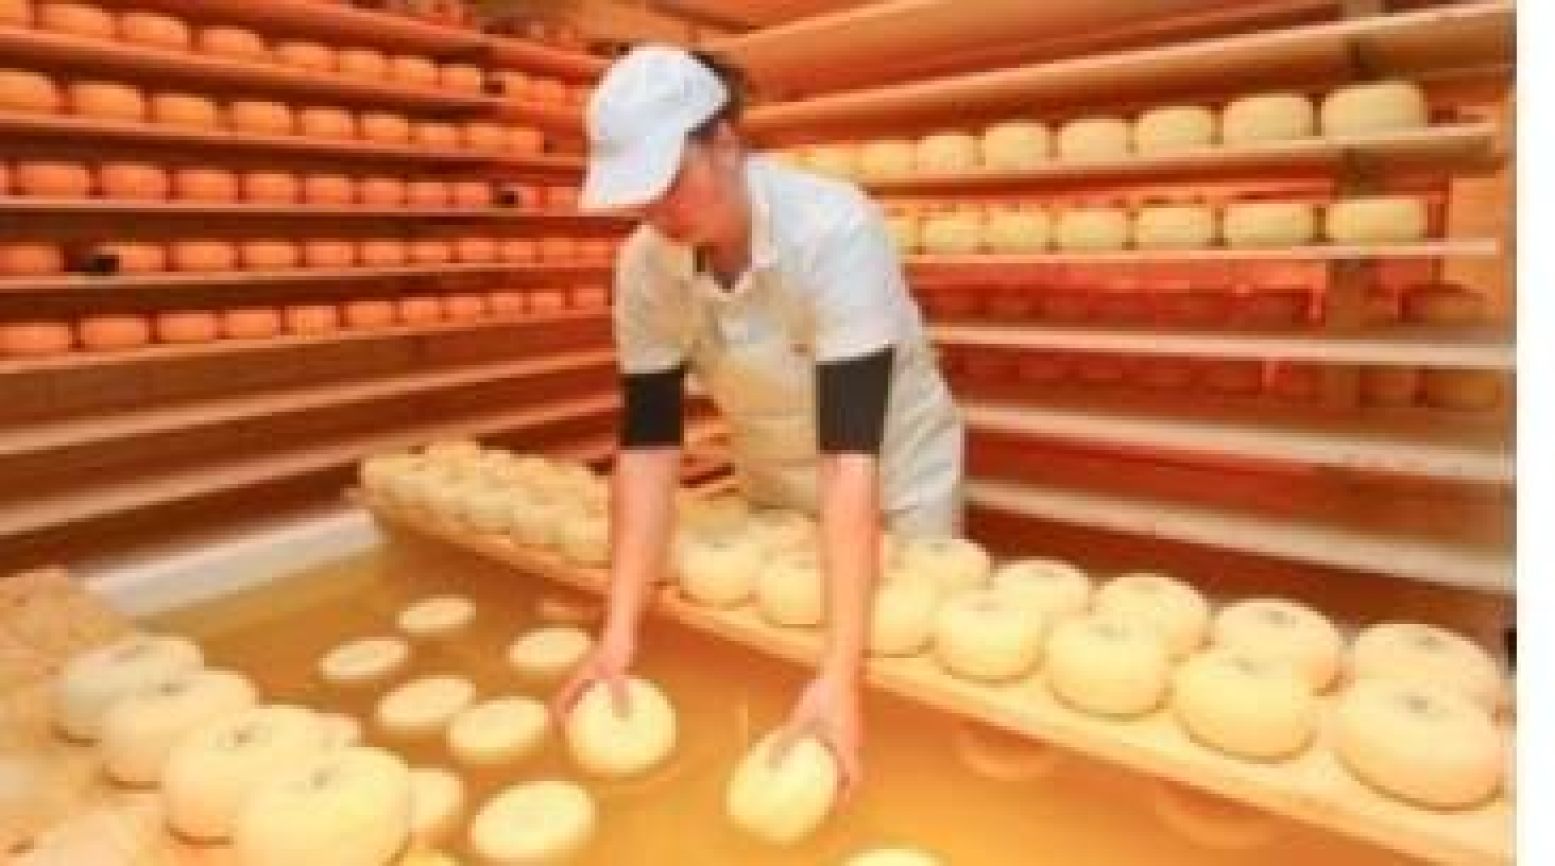 Echte Hollandse boerenkaas krijgt voor je ogen zijn bekende vorm. Foto: Cheese Factory